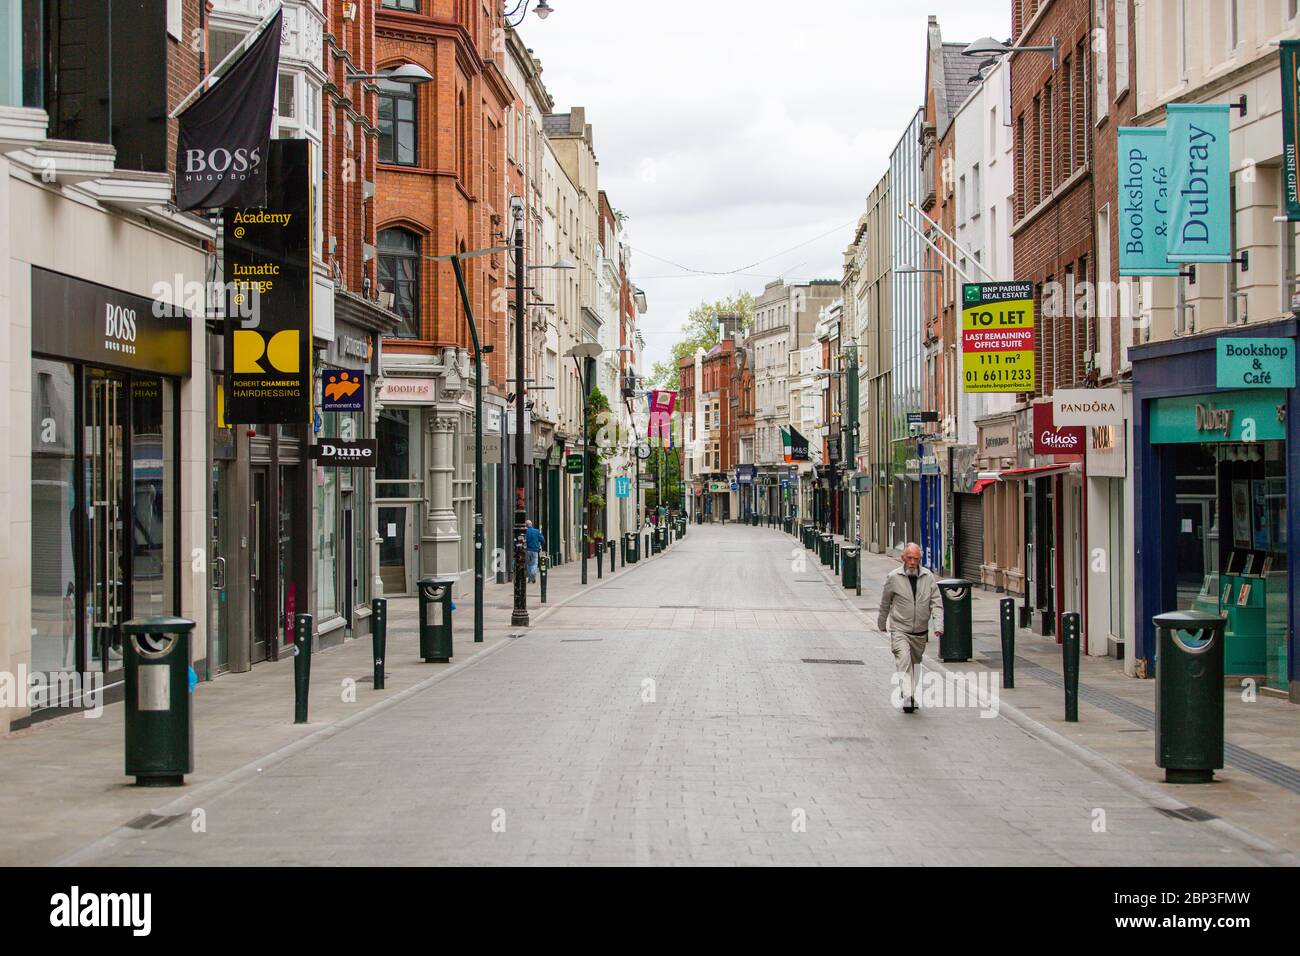 Uomo anziano che cammina attraverso Grafton Street deserta nel centro di Dublino, mentre la caduta dei piedi precipita a causa della pandemia di coronavirus. Covid-19 in Irlanda. Foto Stock